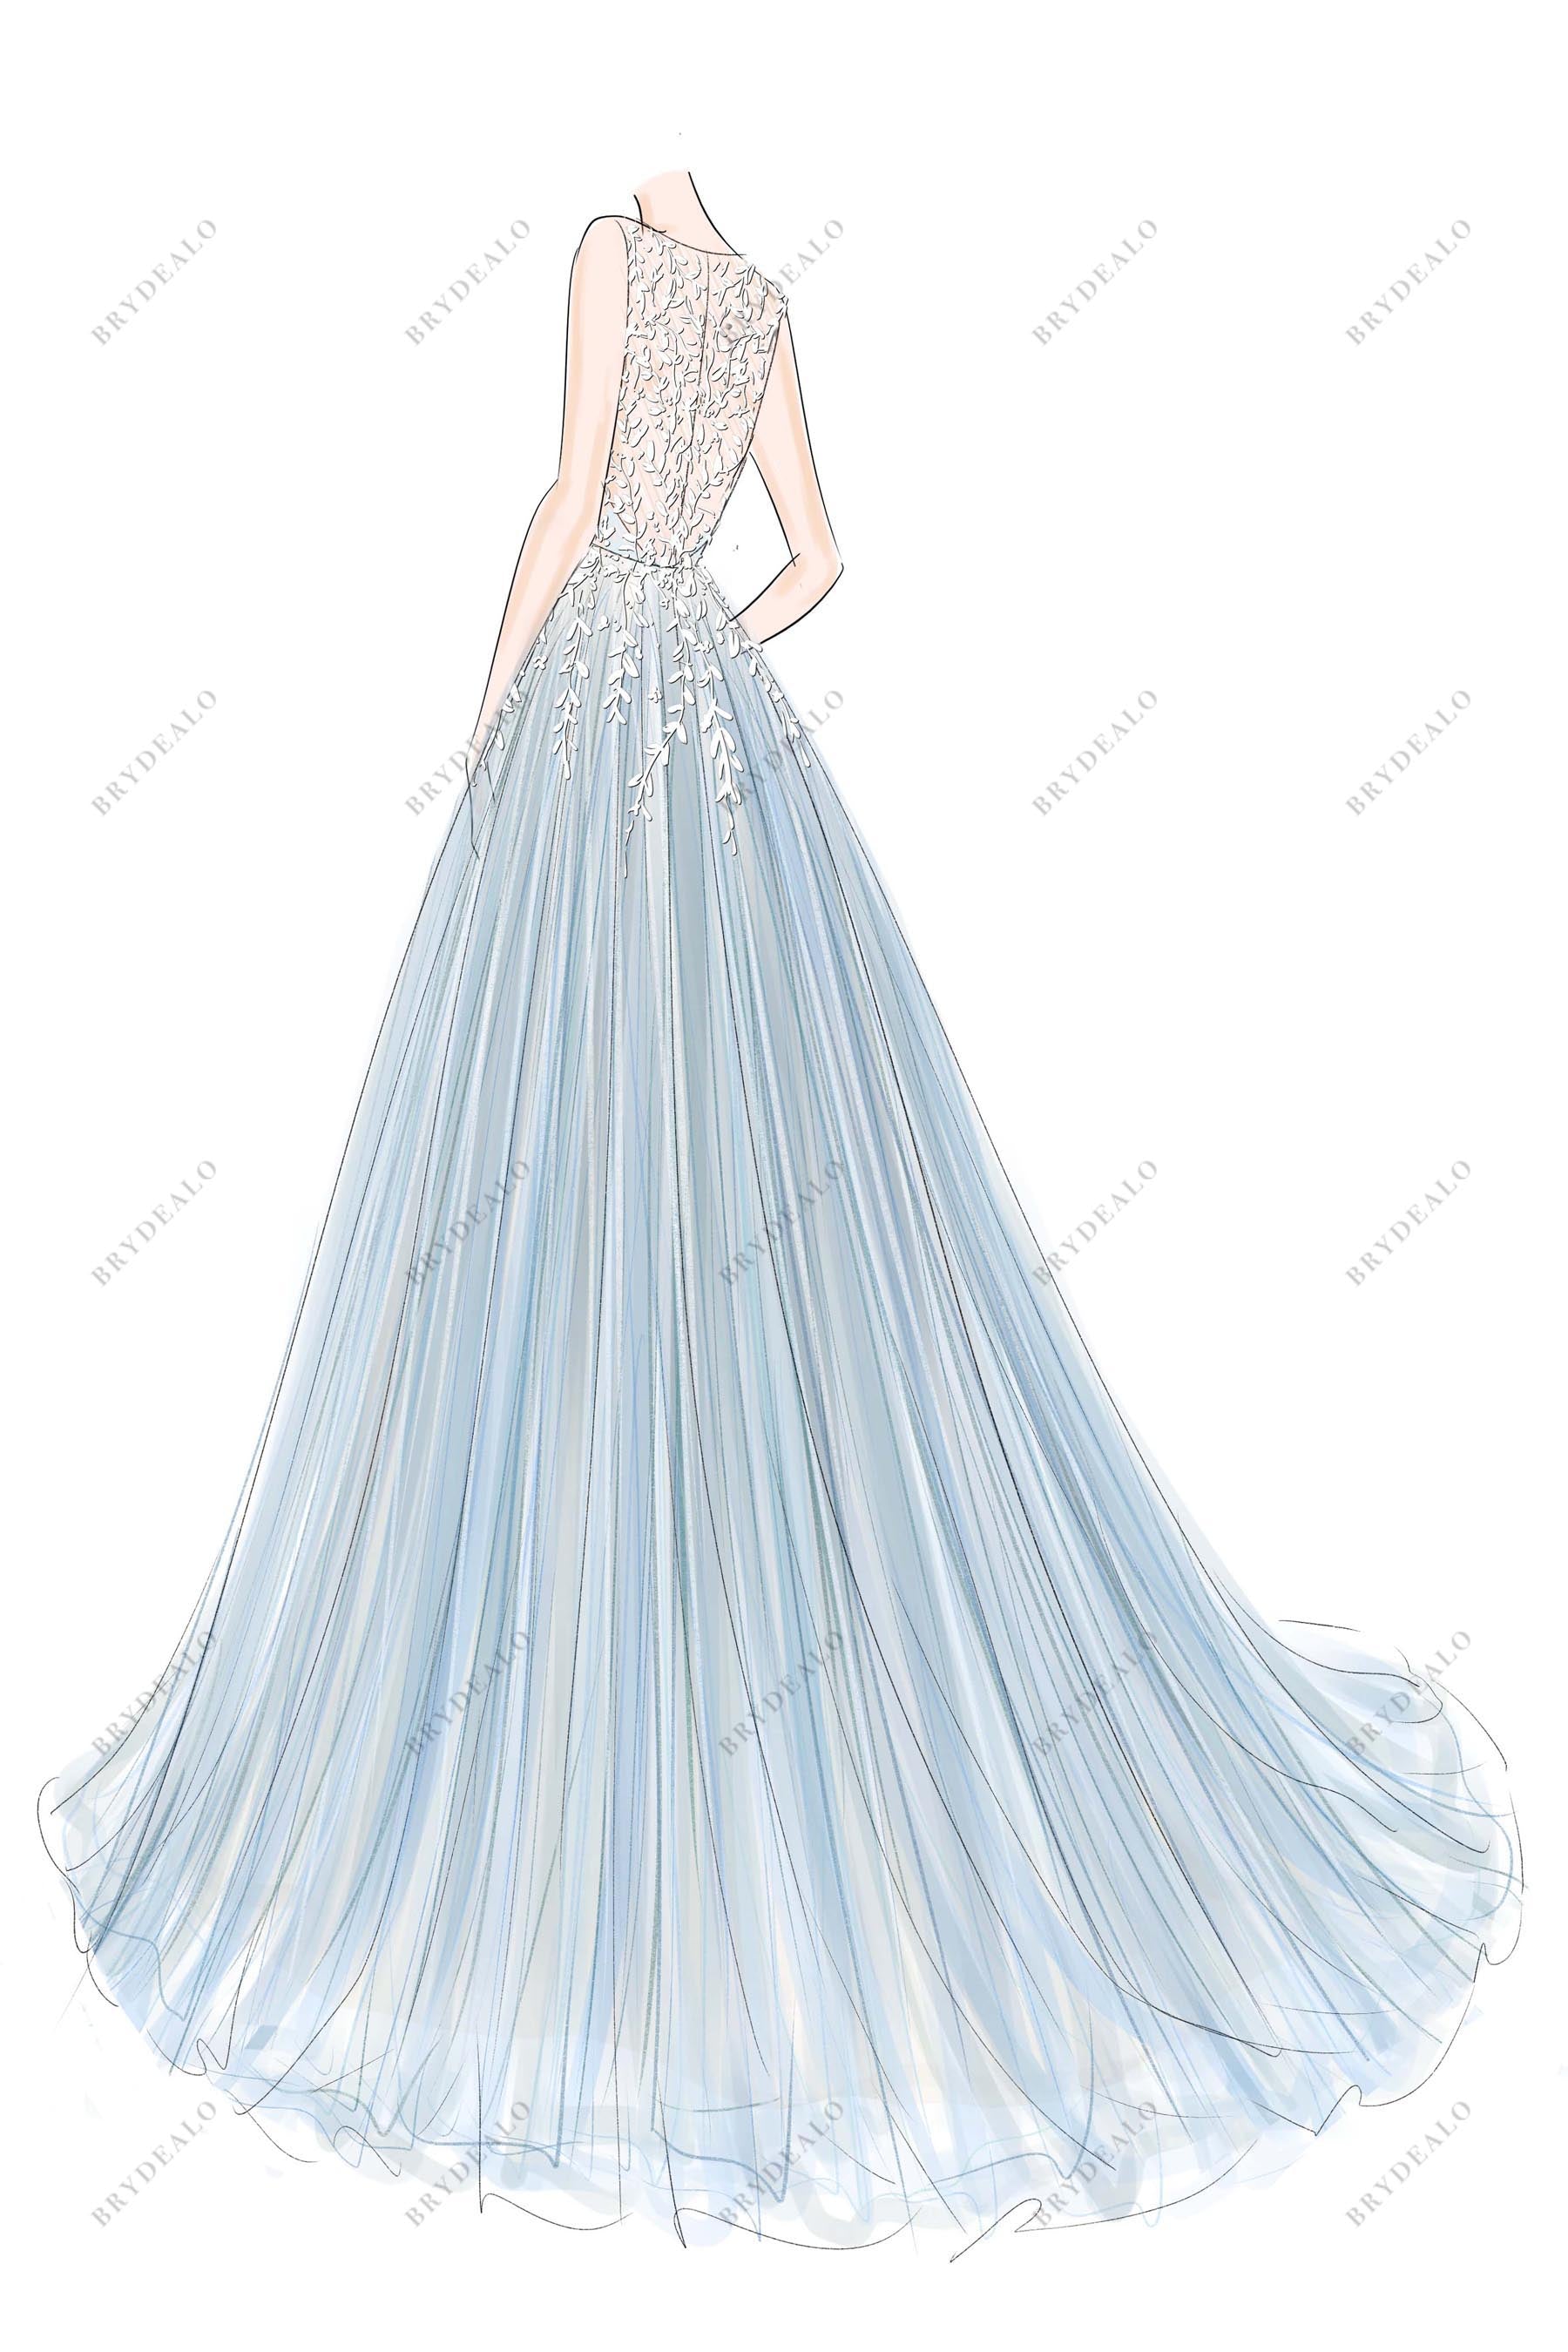 custom blue illusion back wedding dress sketch